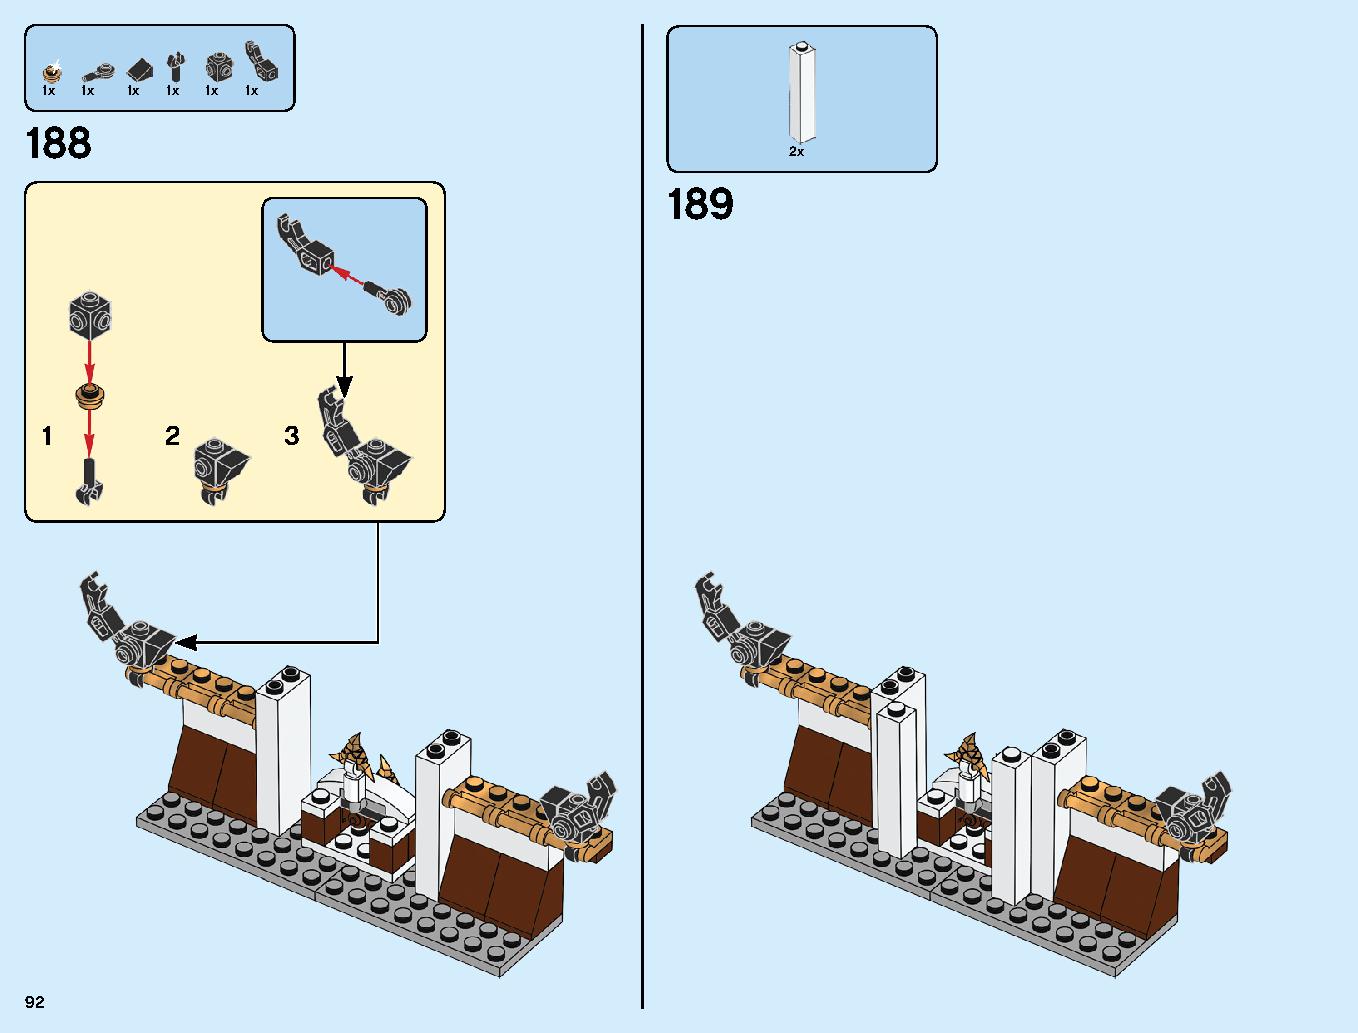 ニンジャ道場 70670 レゴの商品情報 レゴの説明書・組立方法 92 page